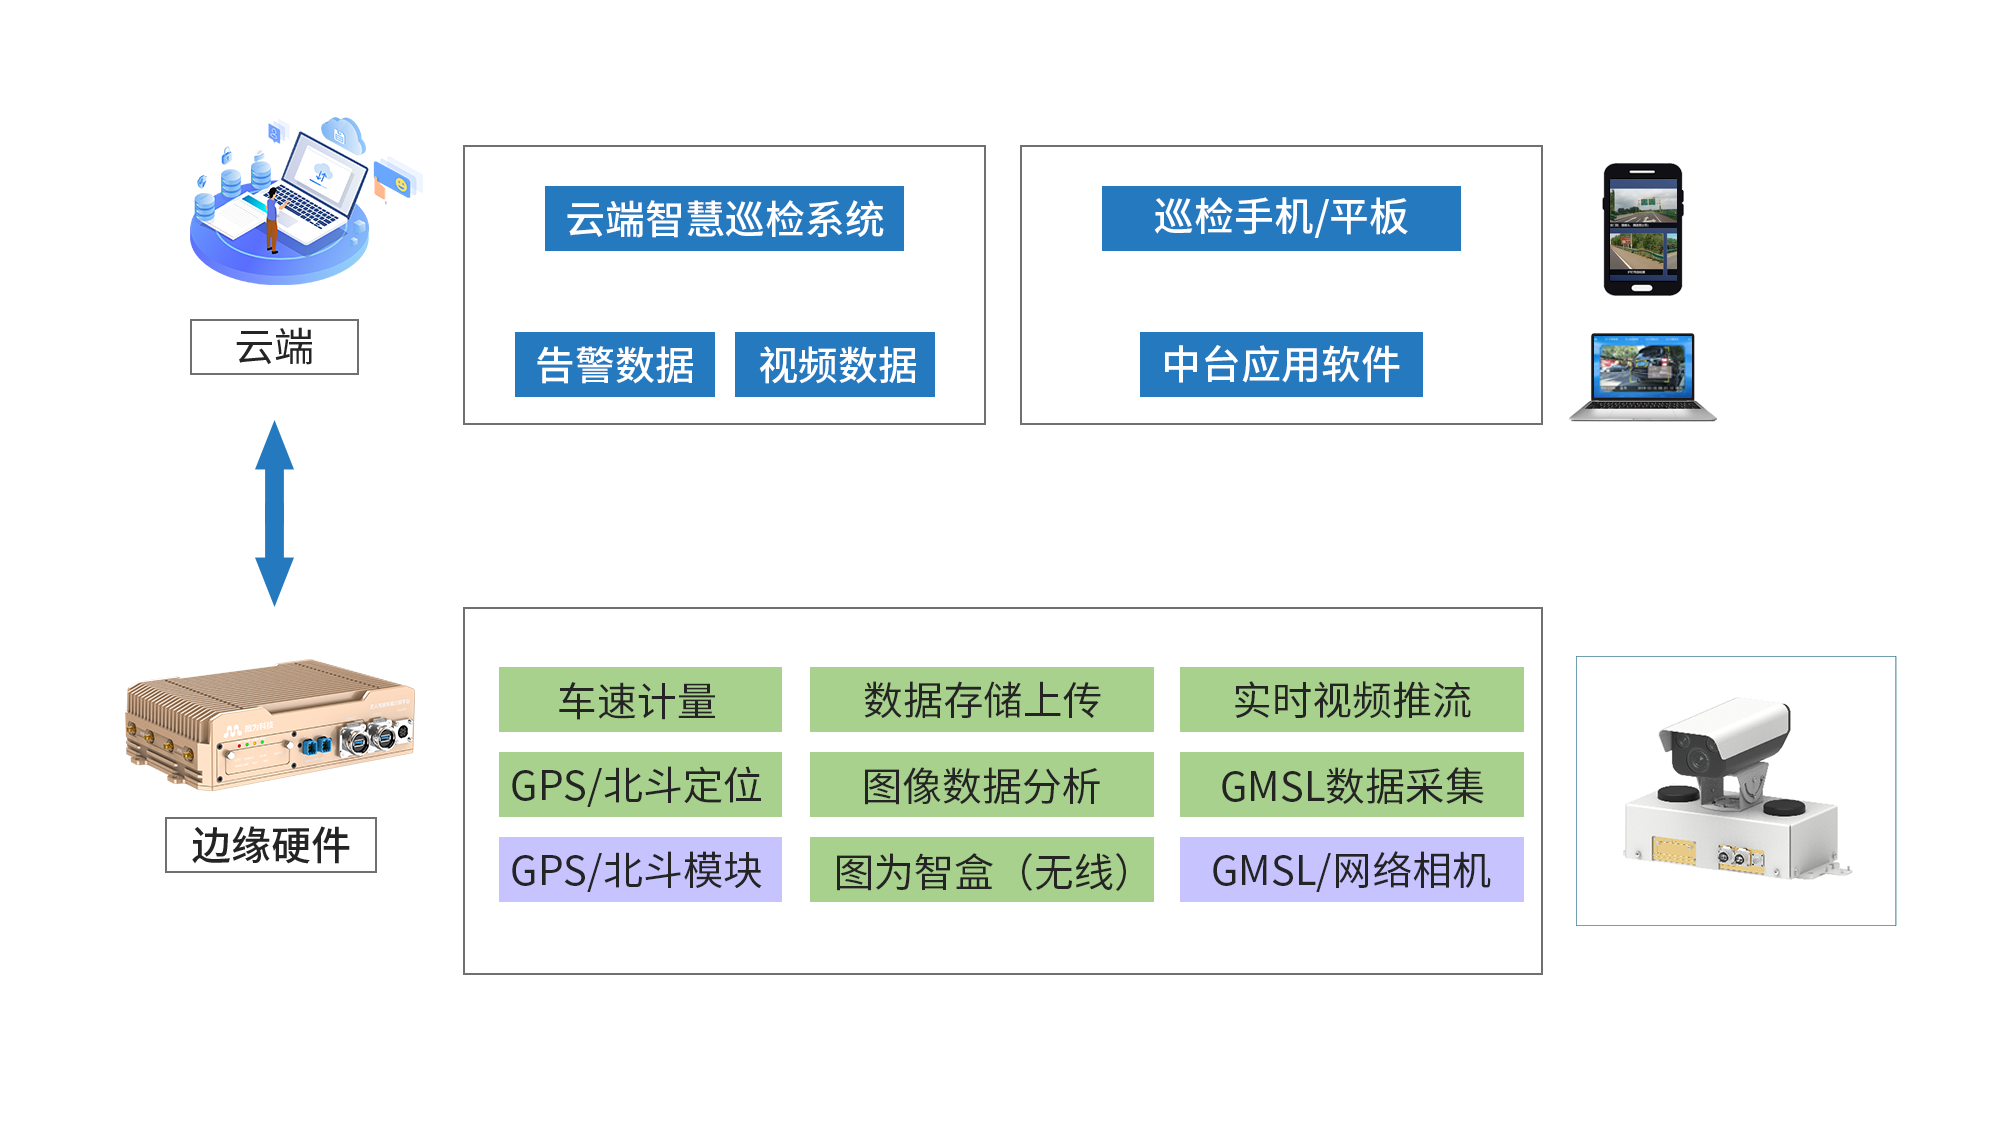 Nvidia Jetson/Orin +FPGA+AI大算力边缘计算盒子:公路智能巡检解决方案